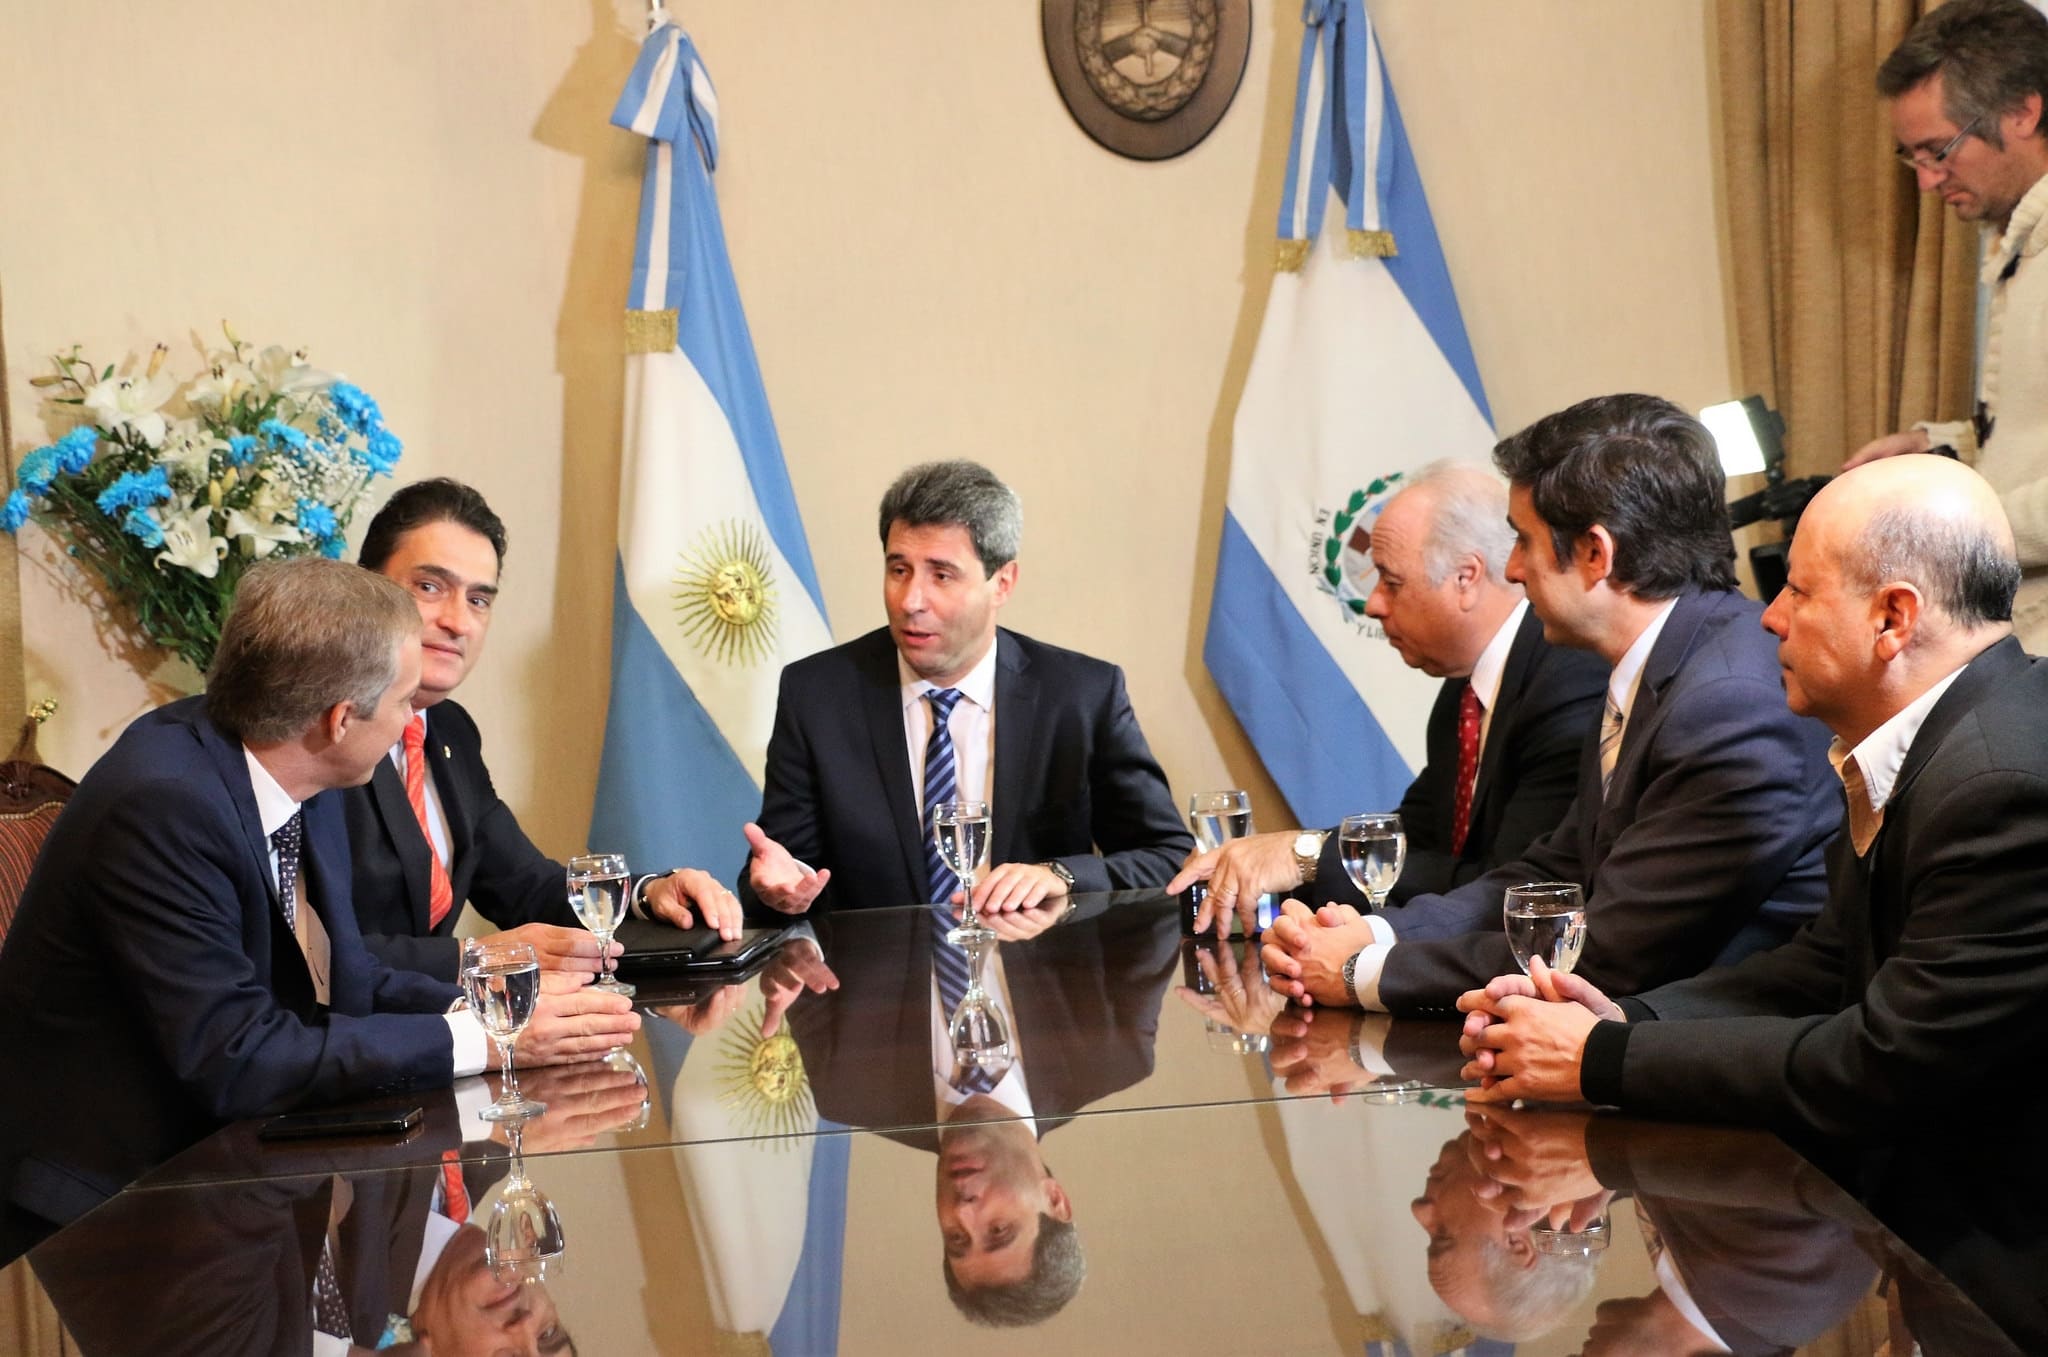 El vicegobernador Marcelo Lima junto al gobernador Sergio Uñac en la presentación de saludos protocolares por parte del embajador de Suiza en la República Argentina, Hanspeter Mock.